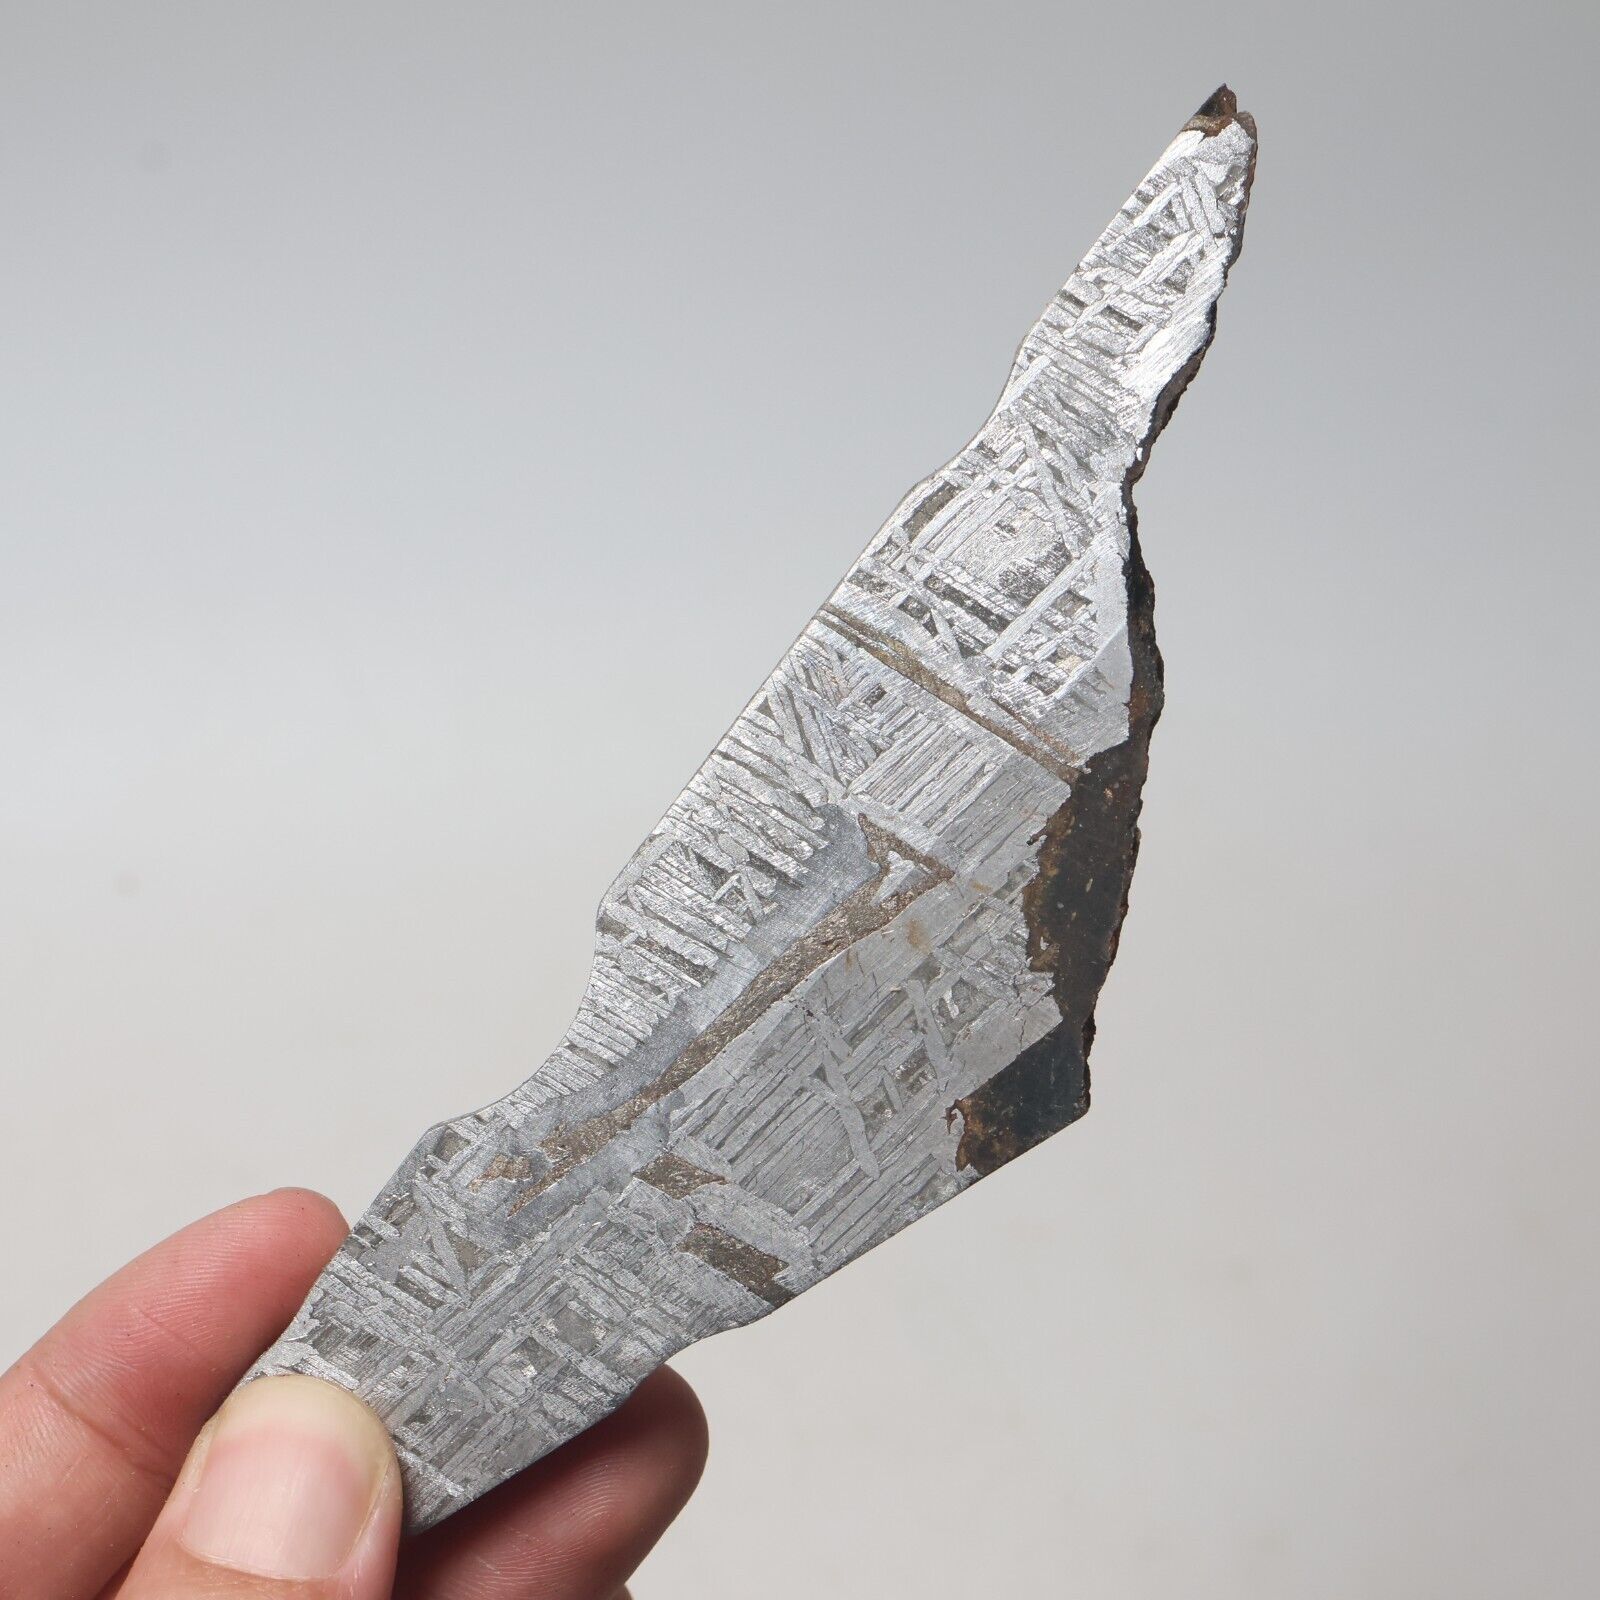 115g Muonionalusta meteorite part slice  A2645